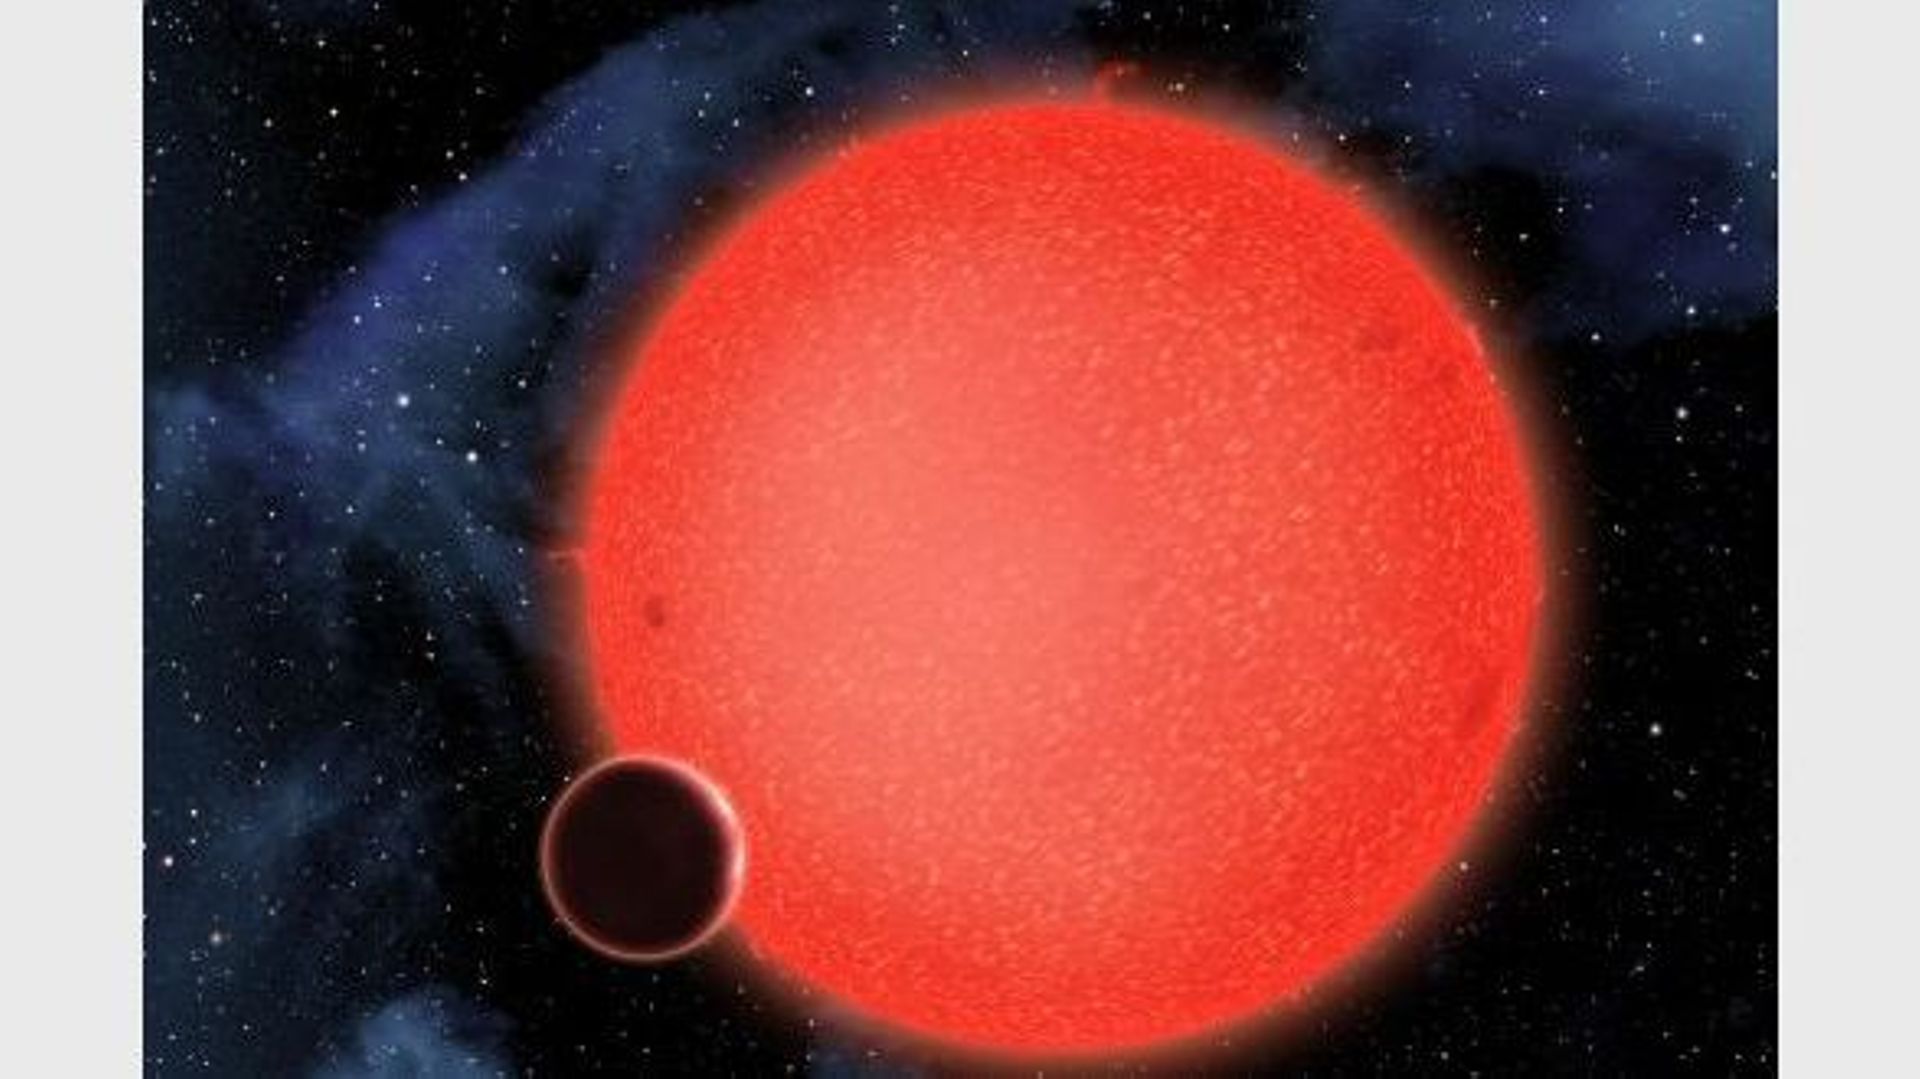 Représentation artistique de l'exoplanète GJ 1214b